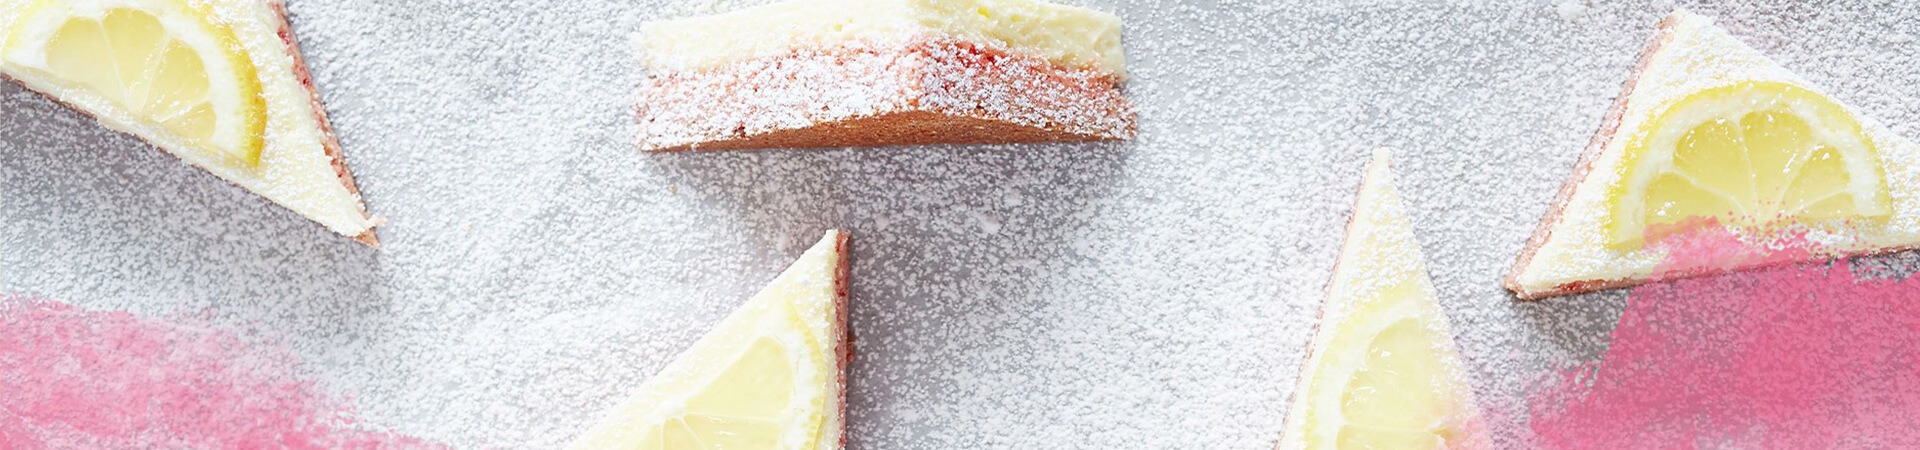 Sliced lemon on white surface